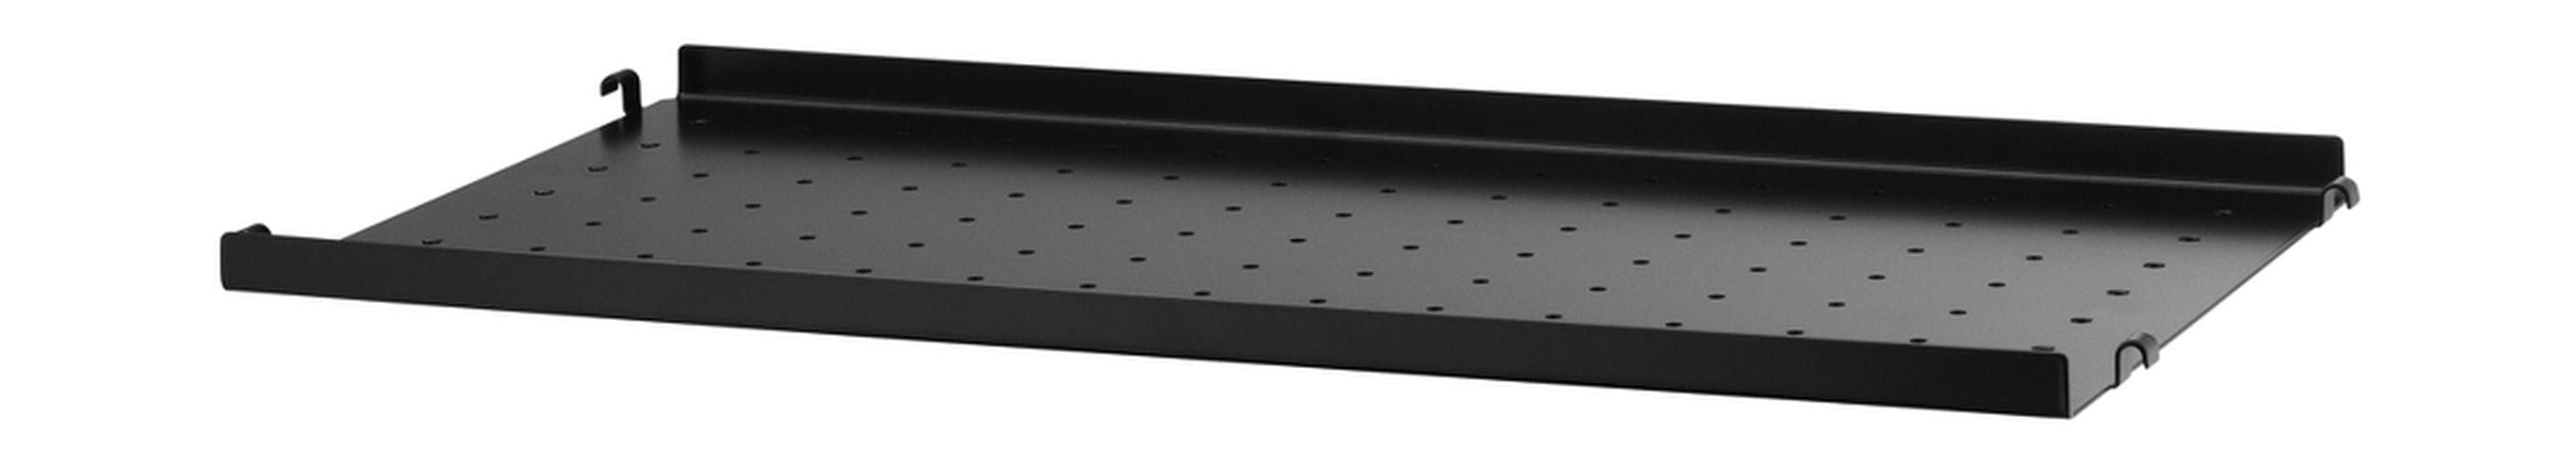 Strengmøbler Strengsystem Metallhylle med lavkant 30x58 cm, svart